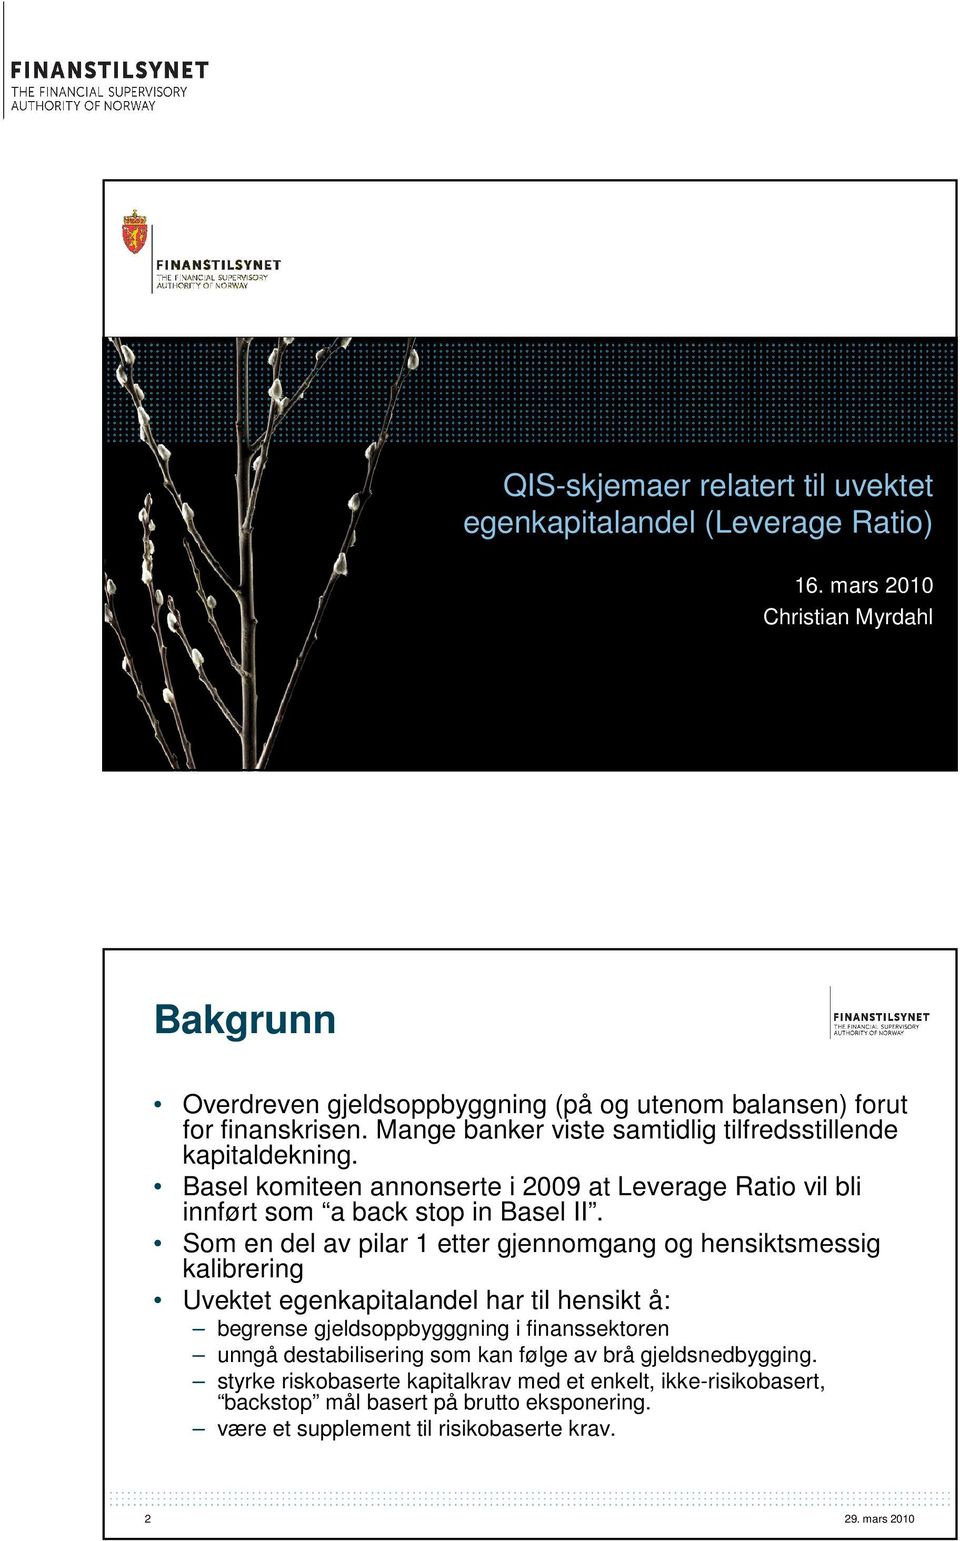 Basel komiteen annonserte i 2009 at Leverage Ratio vil bli innført som a back stop in Basel II.